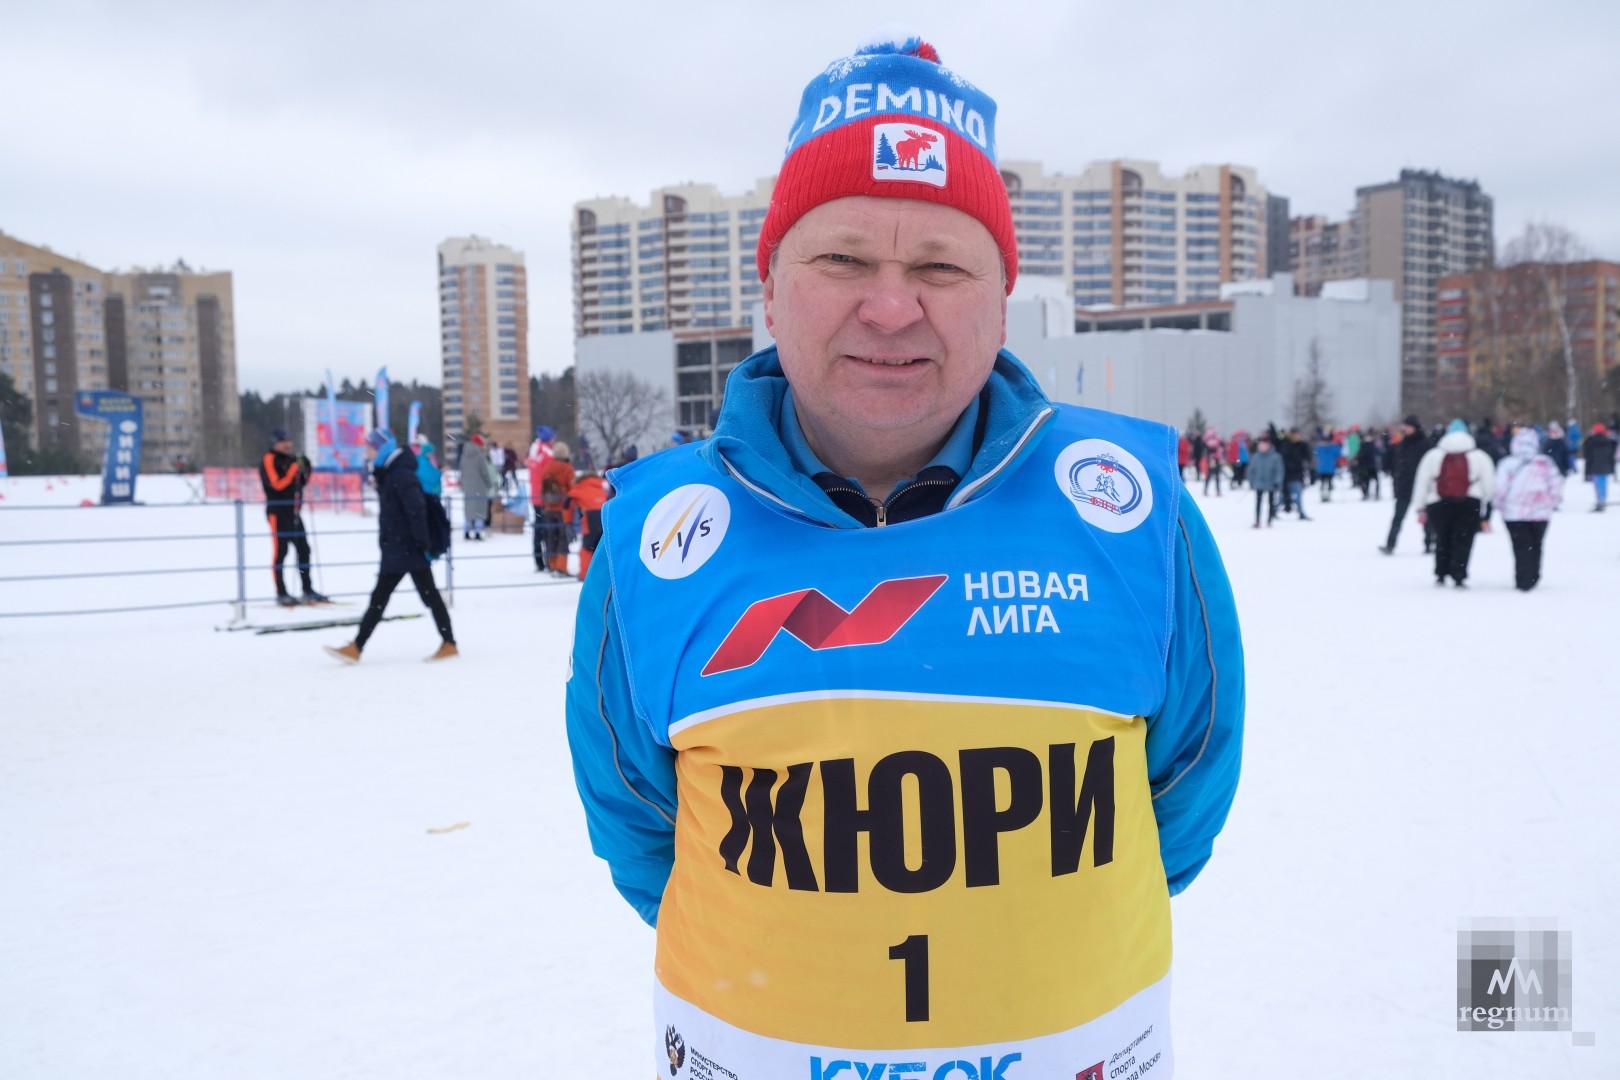 Исполнительный директор Федерации лыжных гонок Москвы и главный судья соревнований Сергей Николаевич Игнатов 